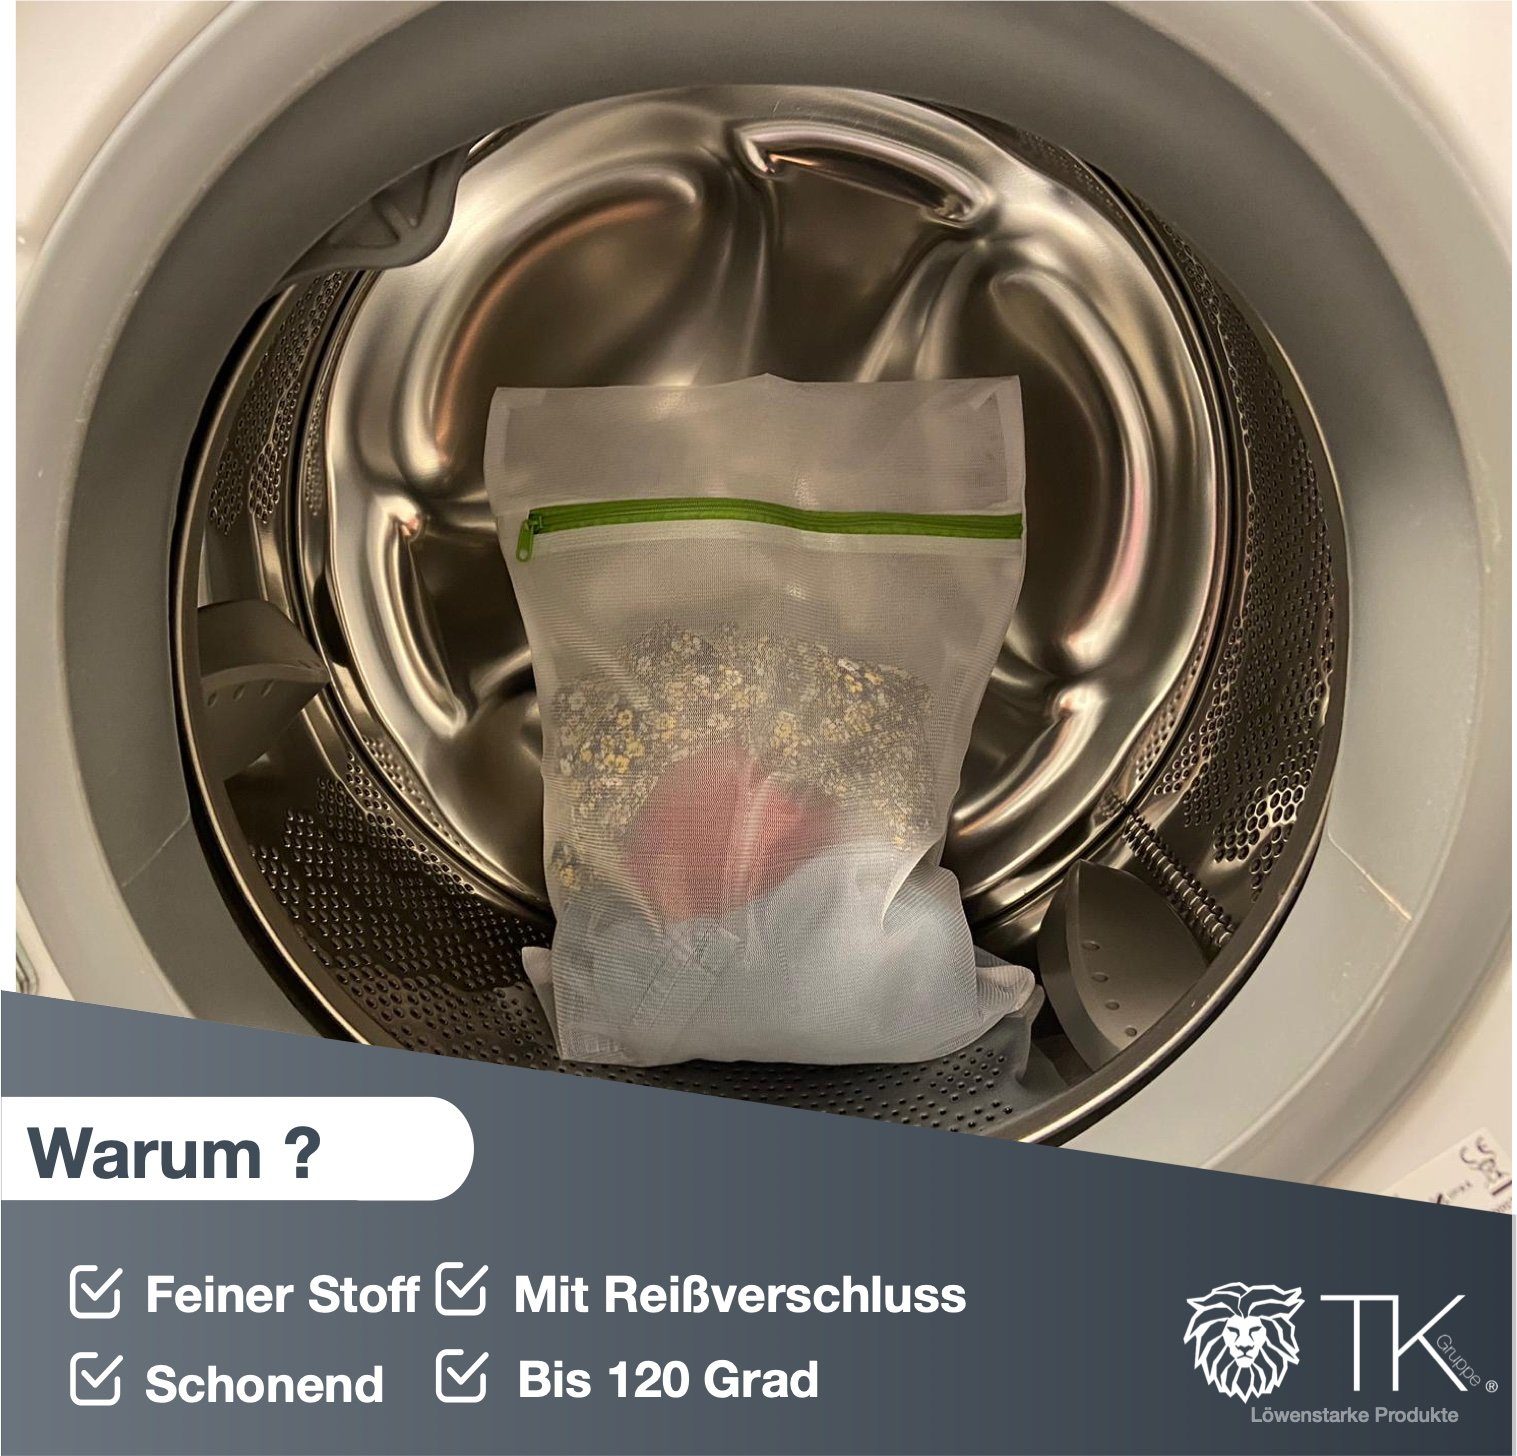 TK Gruppe Netz Wäschenetz 10x Set Waschmaschine Wäschenetz - - Wäschesack,(10-St) für